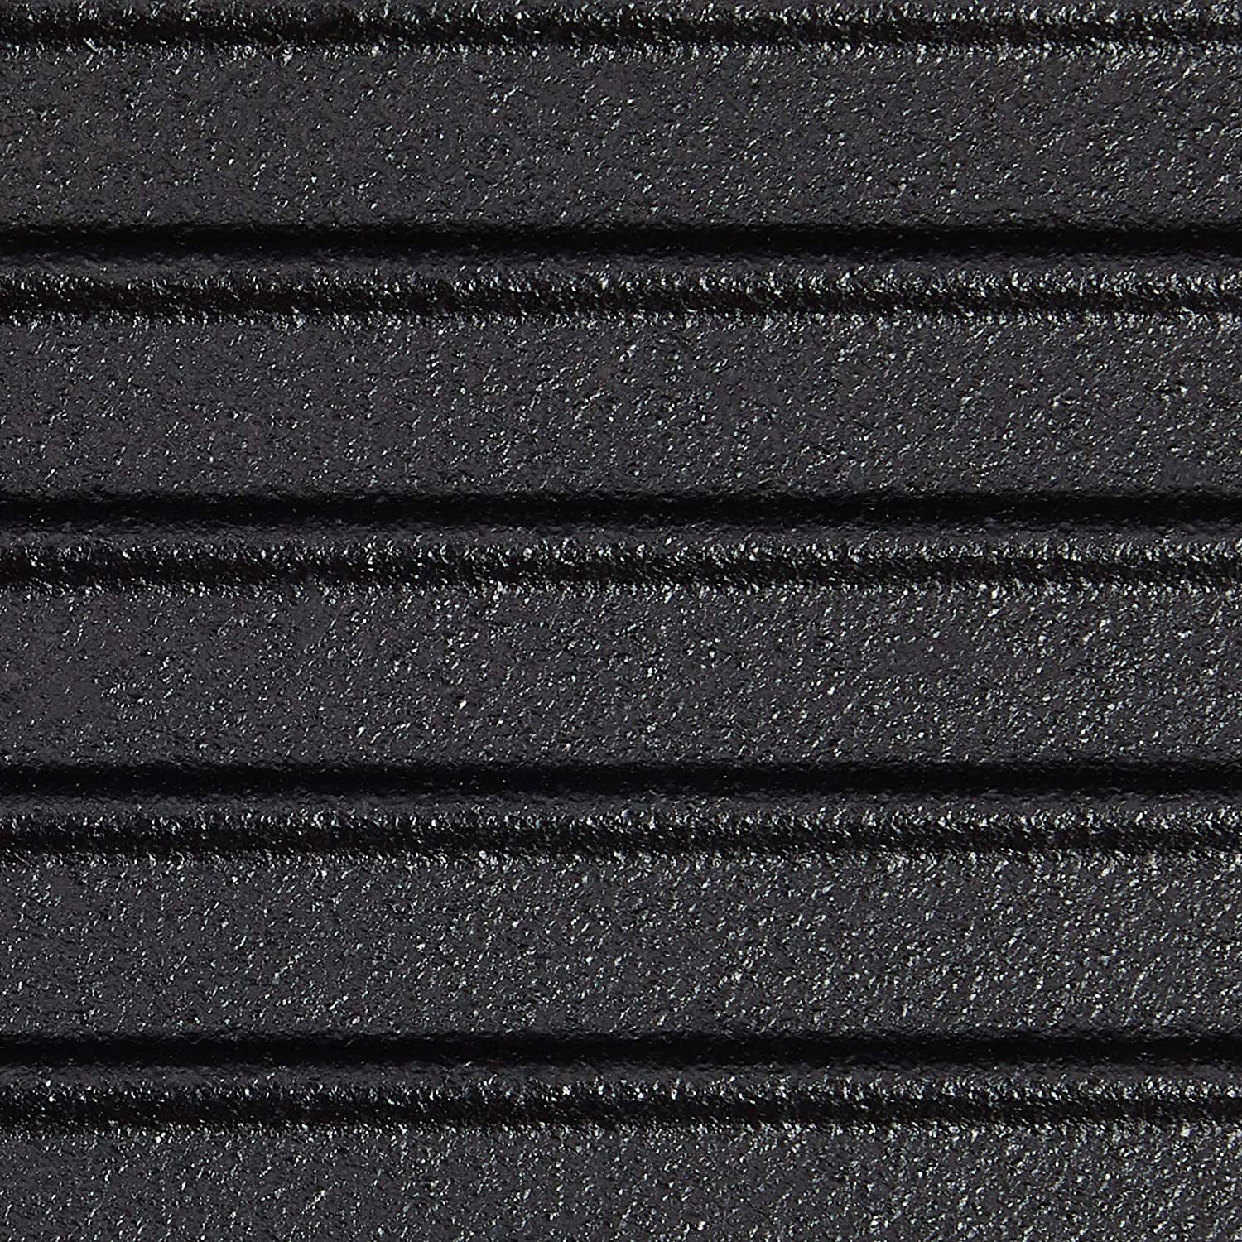 イシガキ産業 スキレット グリルパン 18cmの商品画像サムネ8 